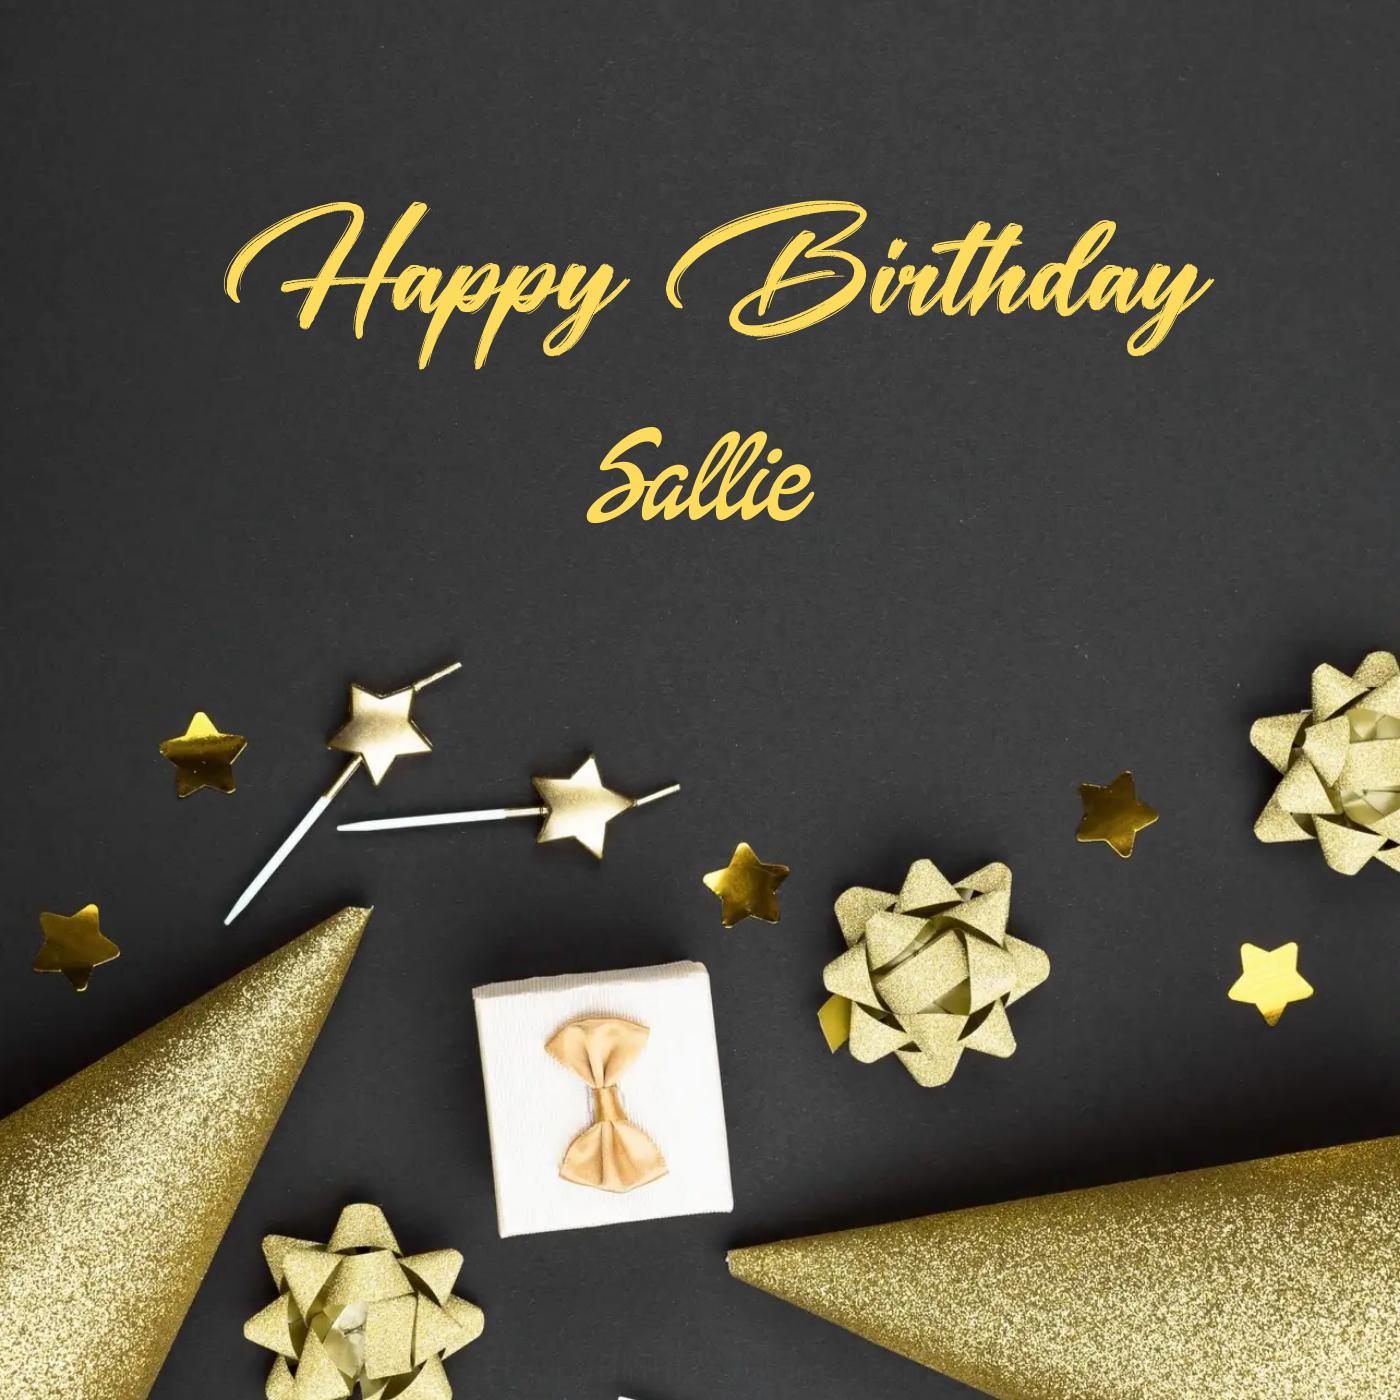 Happy Birthday Sallie Golden Theme Card